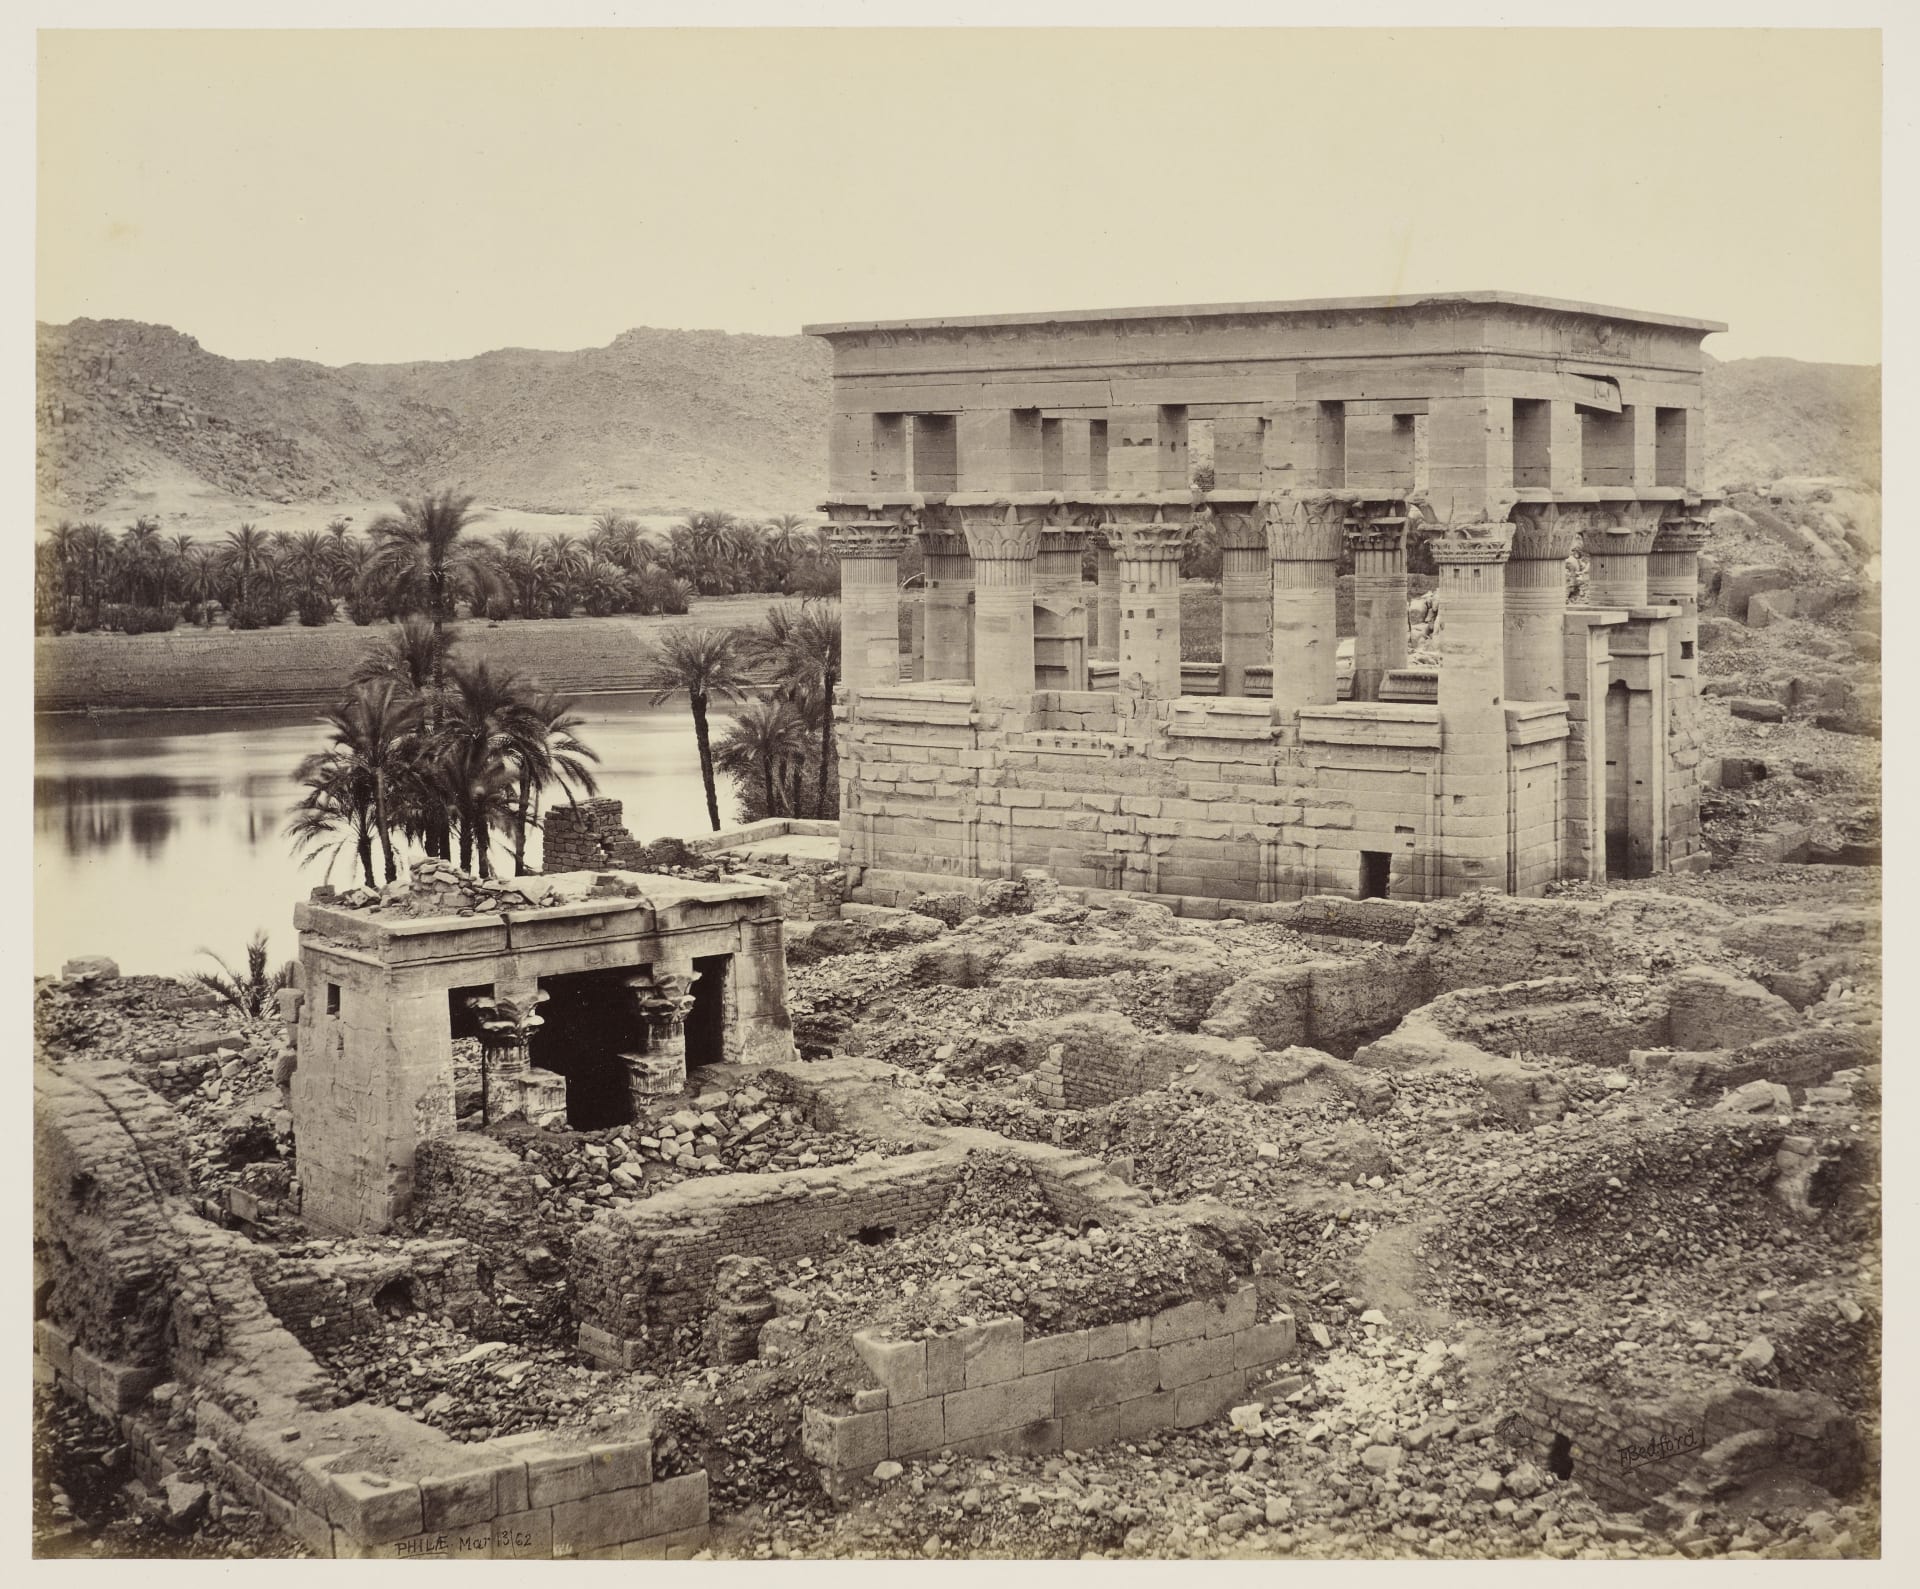 في مصر.. ألق نظرة على أول جولة ملكية تم توثيقها بالصور قبل 150 عام